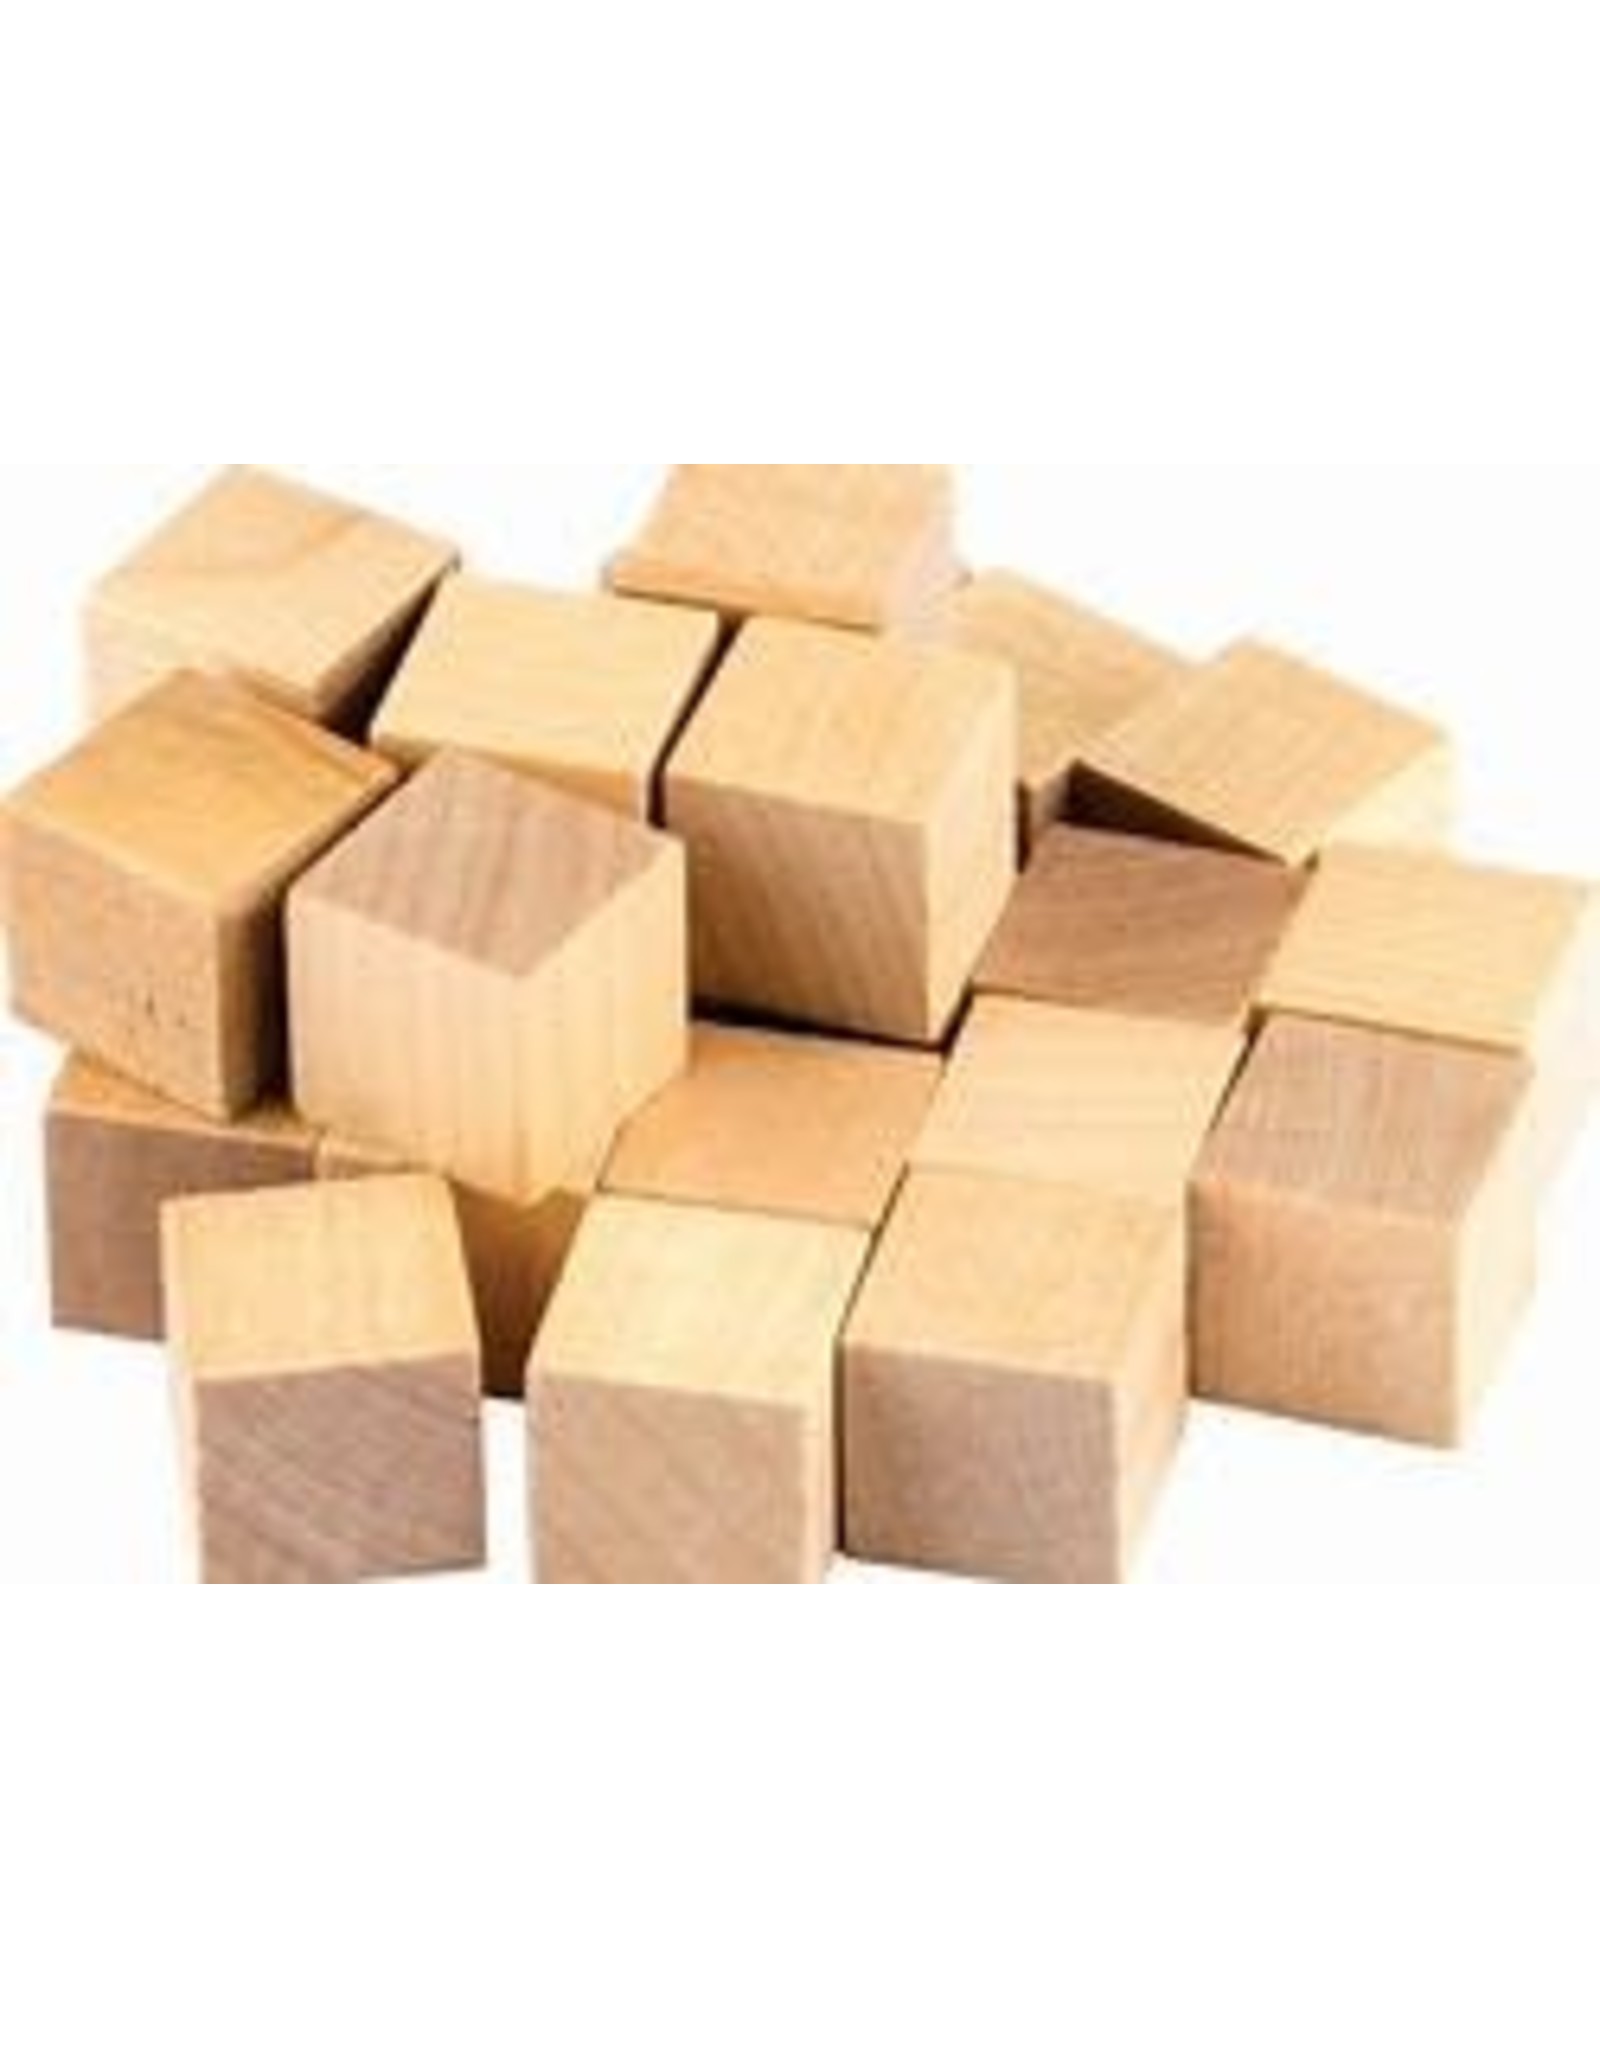 STEM Basic Wooden Cube